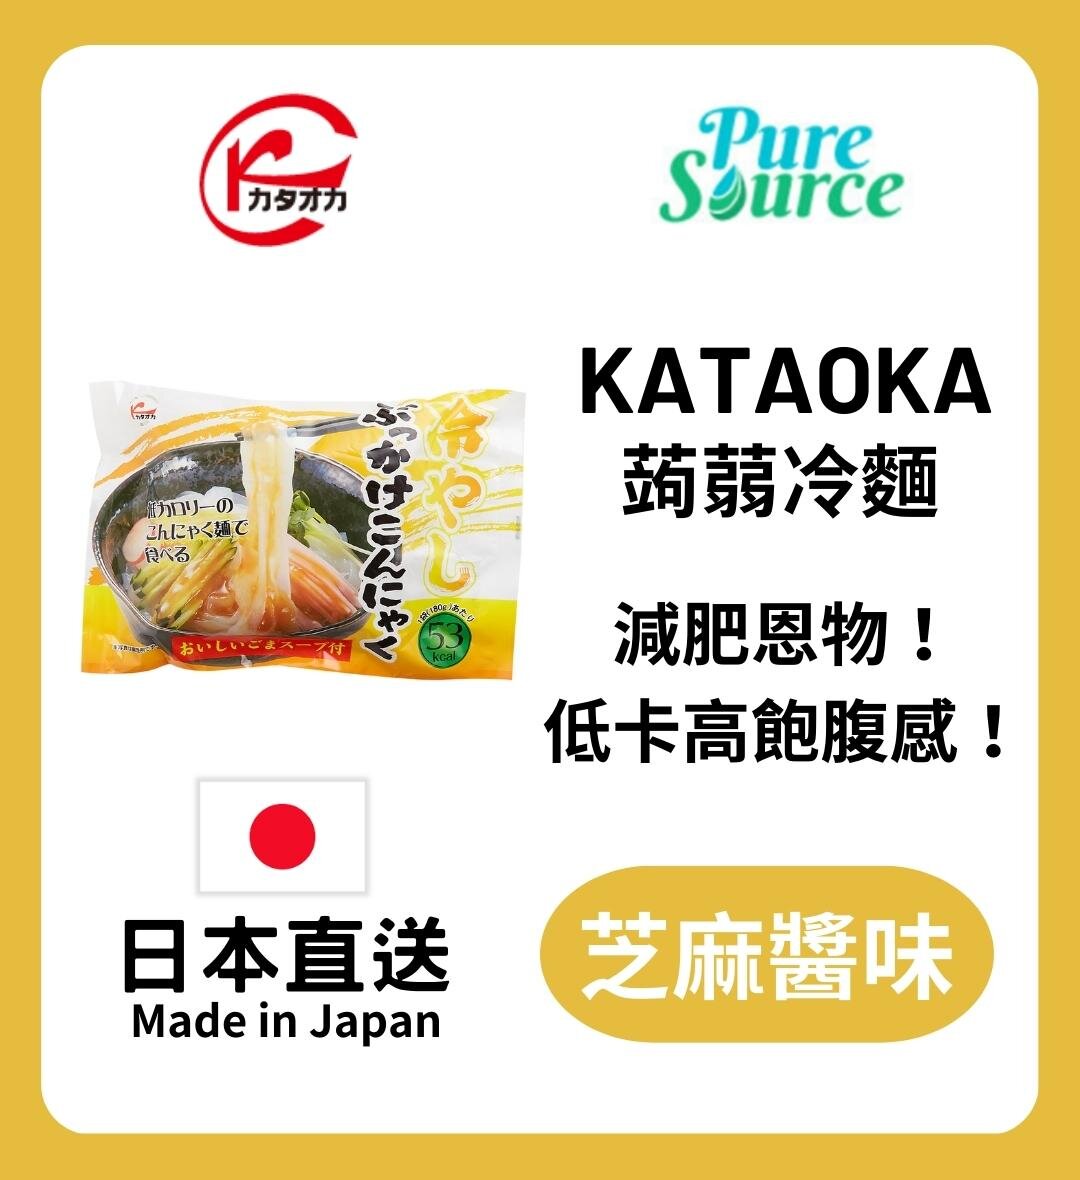 kataoka | [日本直送] 蒟蒻冷麵-芝麻汁#低卡路里| HKTVmall 香港最大